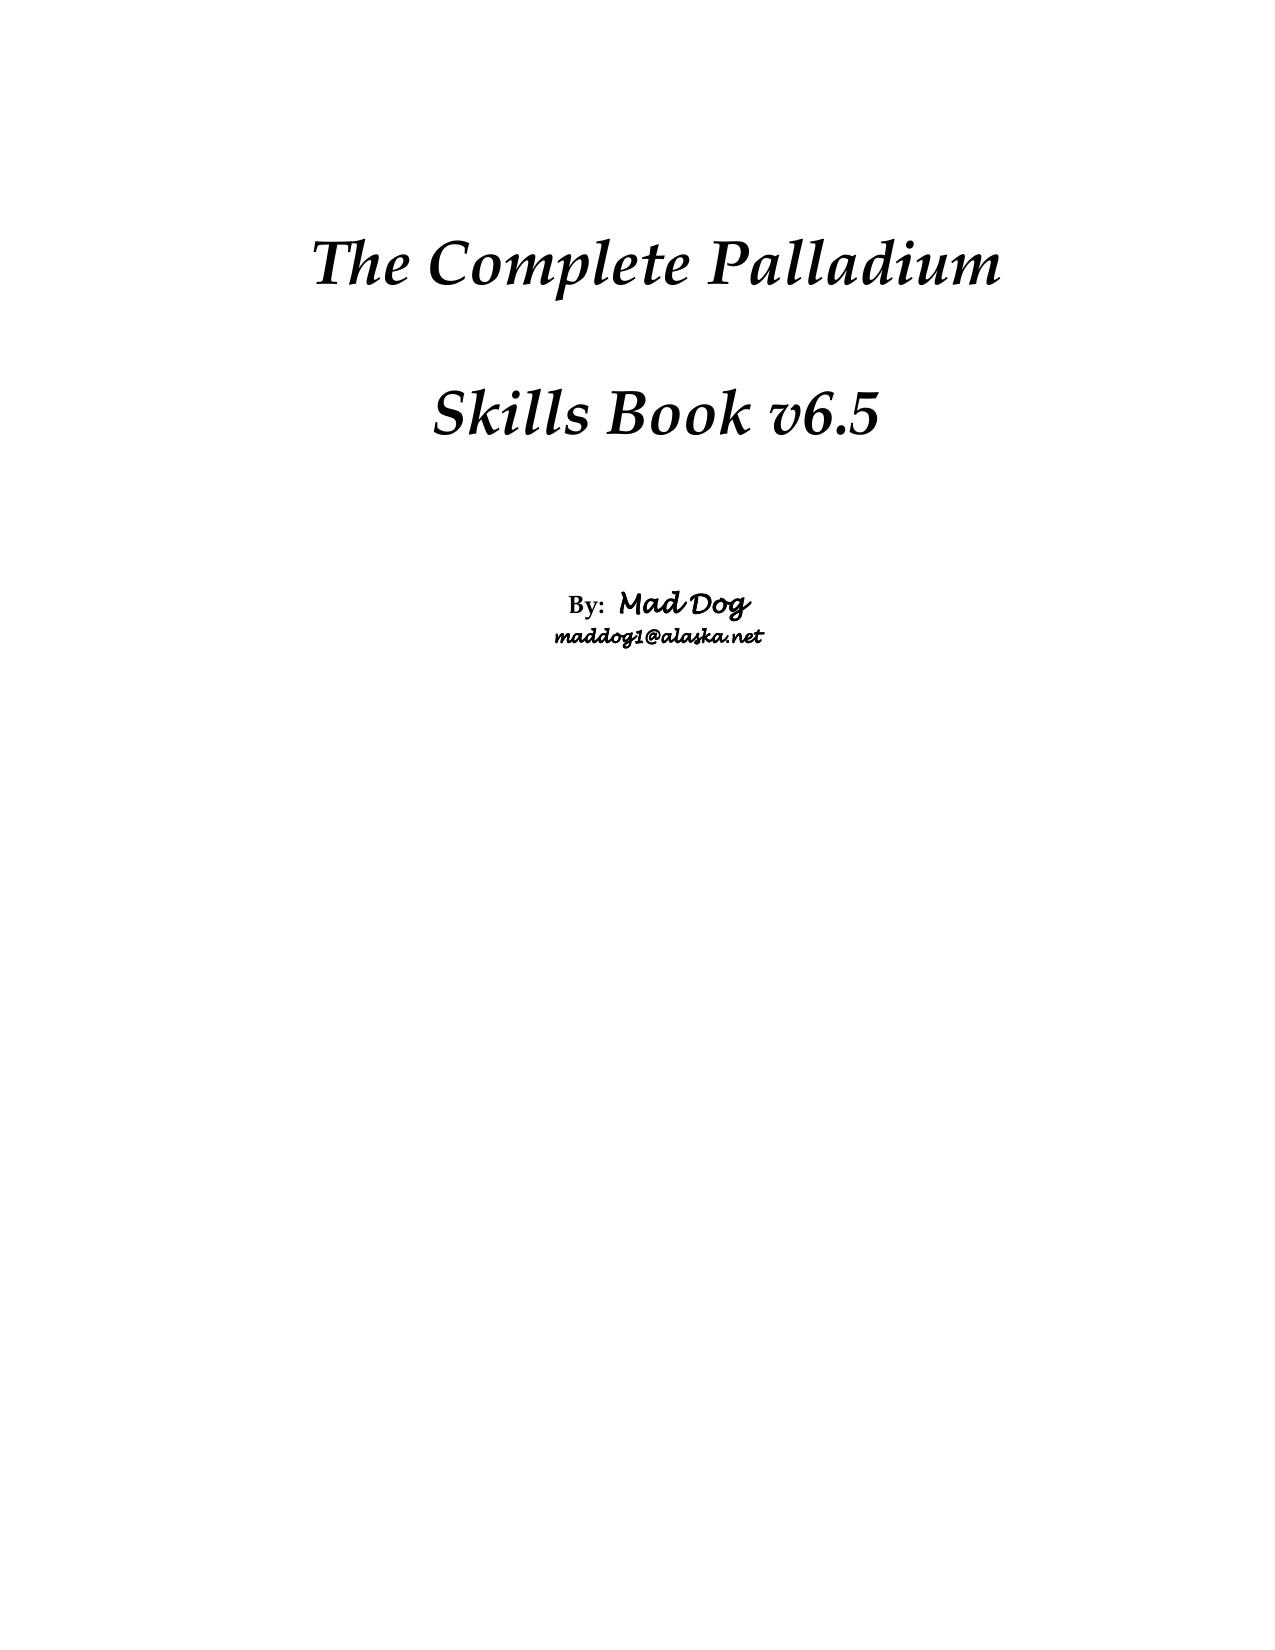 Palladium Skills NetBook 6.5